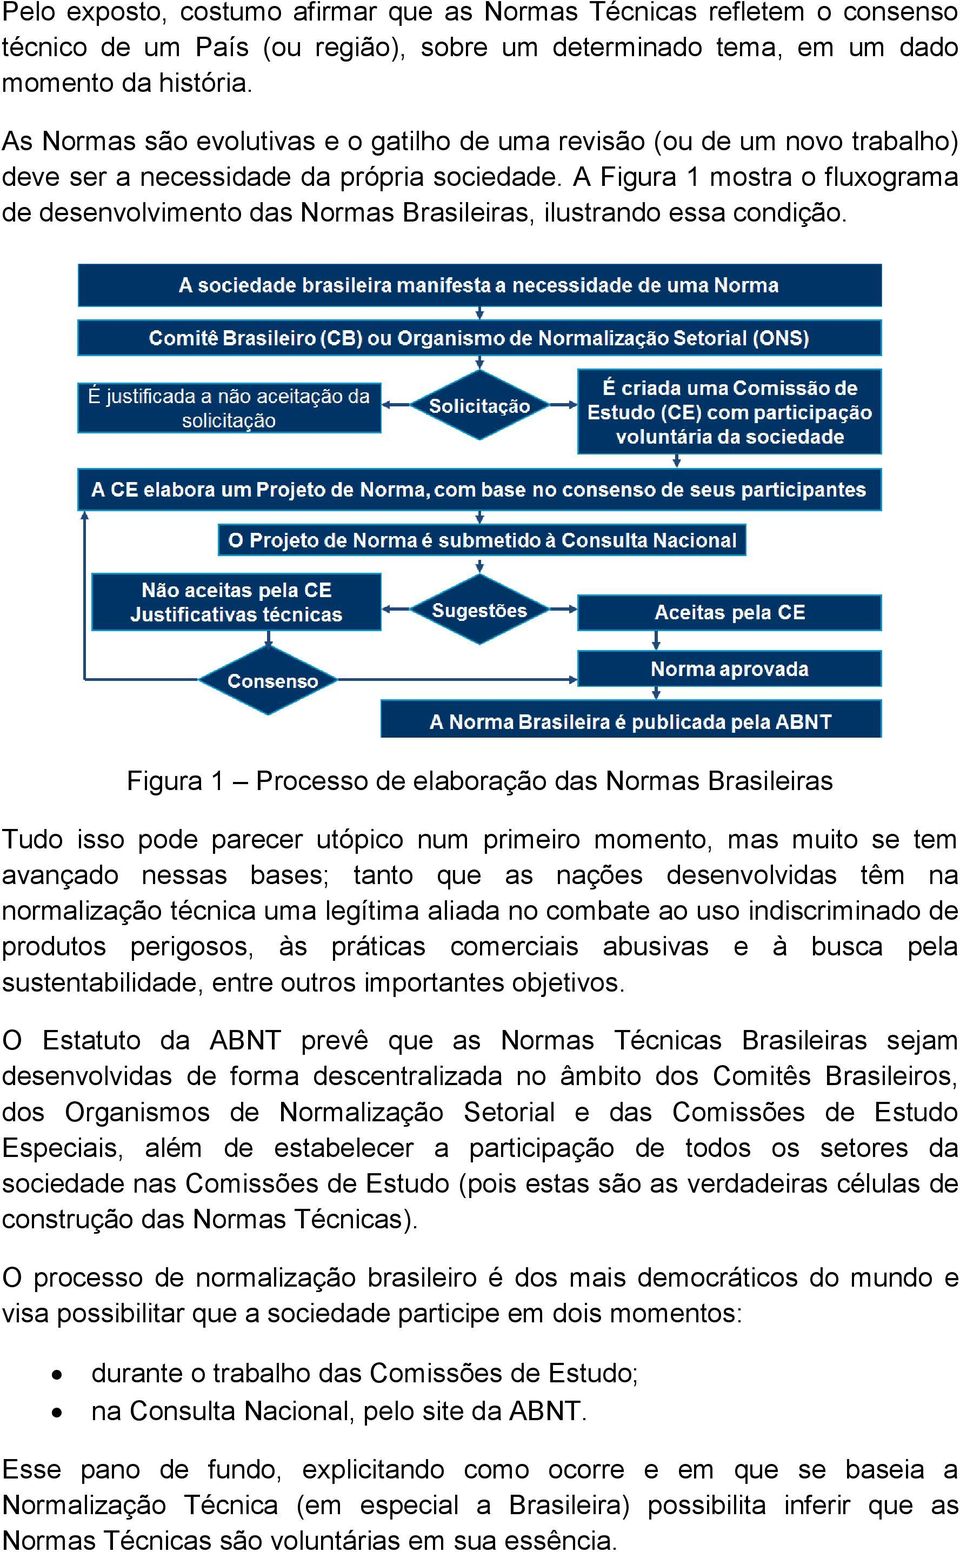 A Figura 1 mostra o fluxograma de desenvolvimento das Normas Brasileiras, ilustrando essa condição.